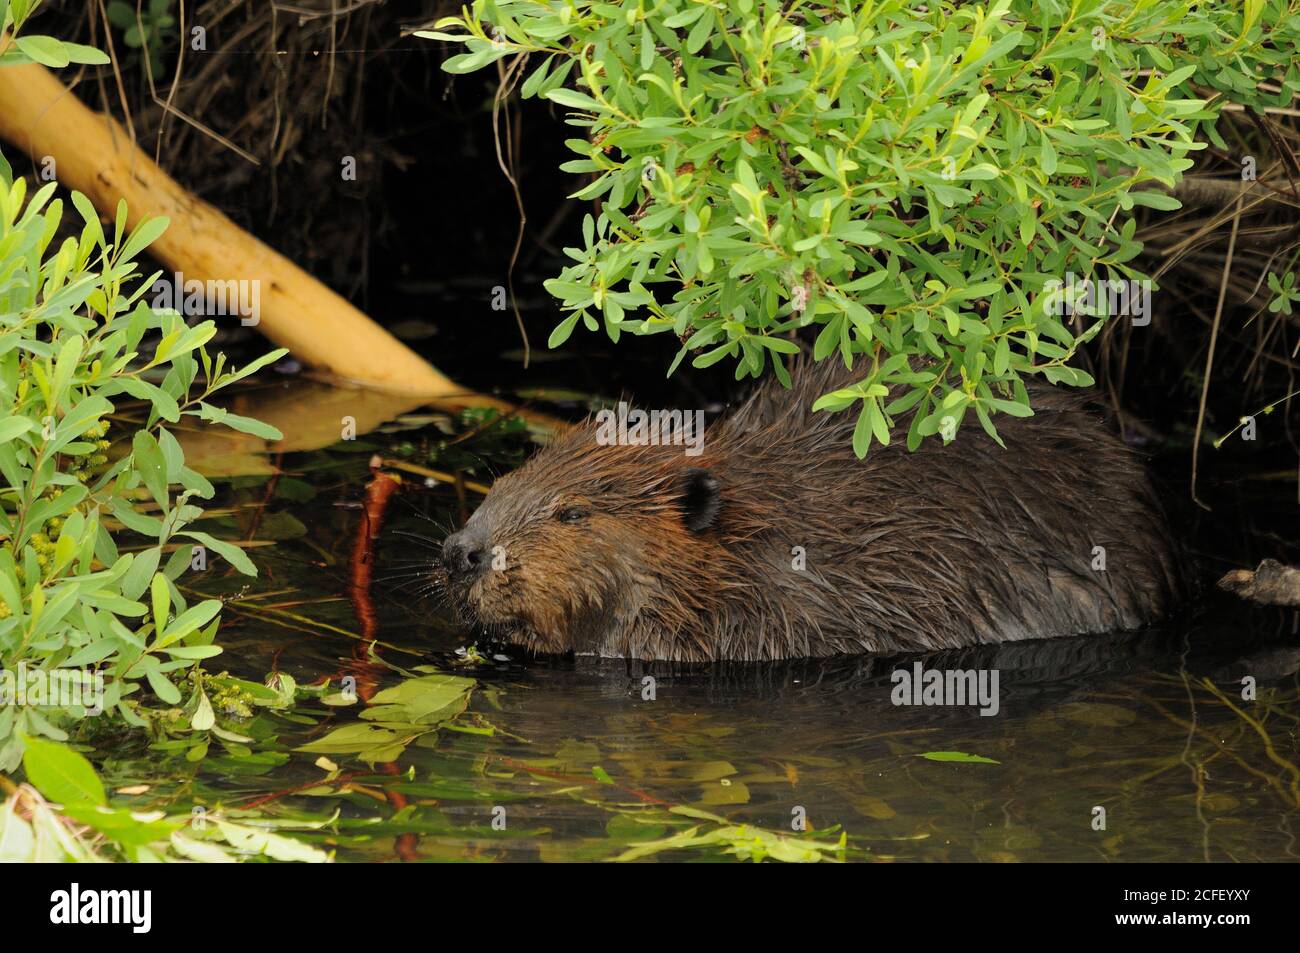 Castor mangeant dans l'eau présentant un manteau de fourrure brun, le corps, la tête, les yeux, les oreilles, le nez, les pattes, les griffes avec un fond de feuillage vert et dans son habitat et Banque D'Images